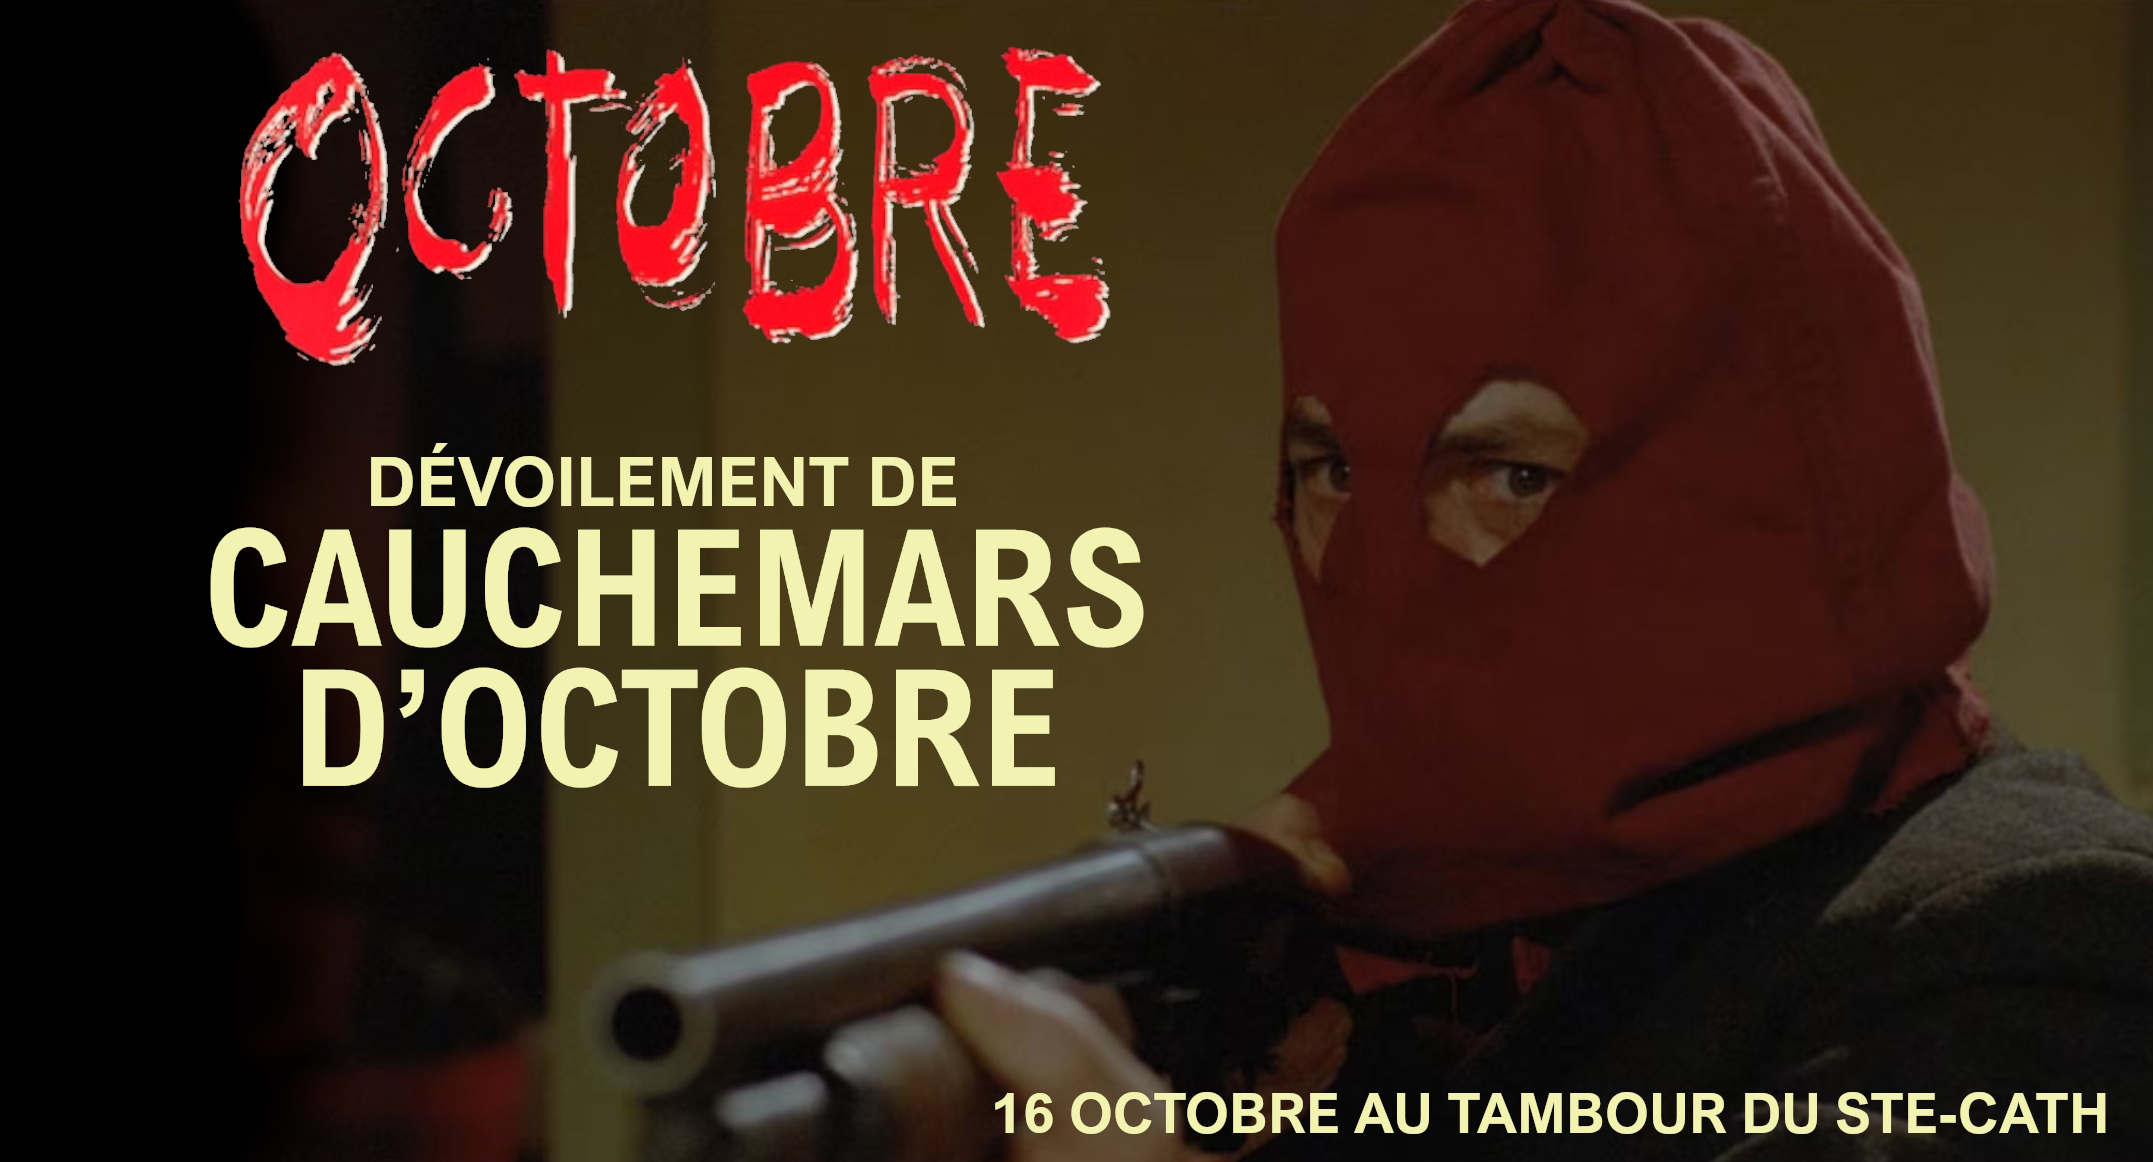 Projection d’Octobre de Falardeau & Dévoilement de Cauchemars d’octobre